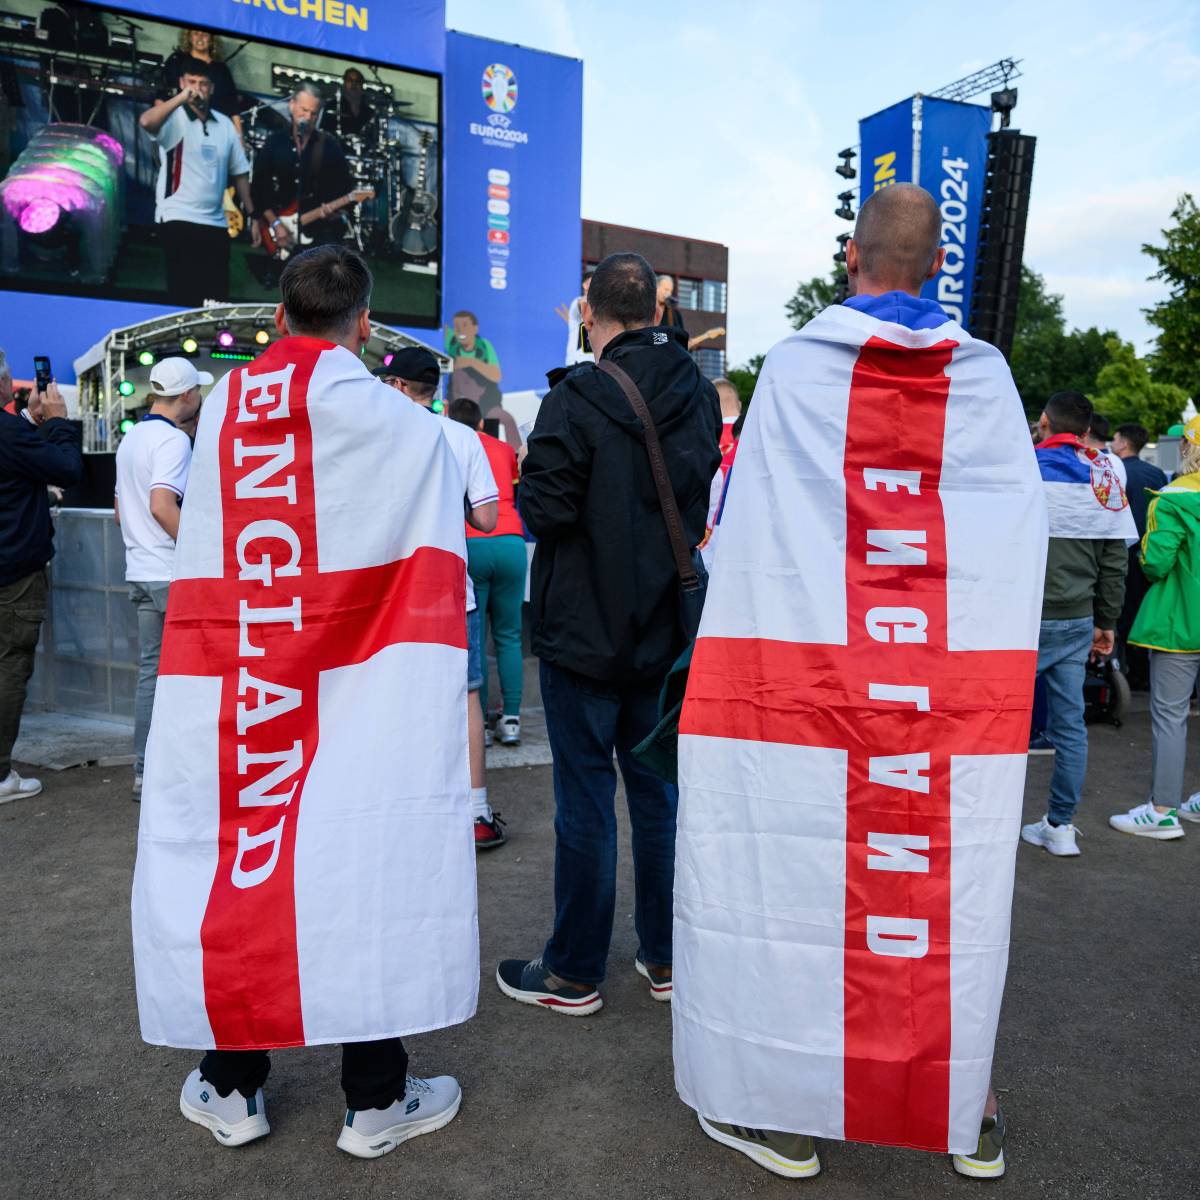 England zittert vor EM-Duell mit Deutschland: Dafür nehmen die Fans sogar dieses Trauma in Kauf